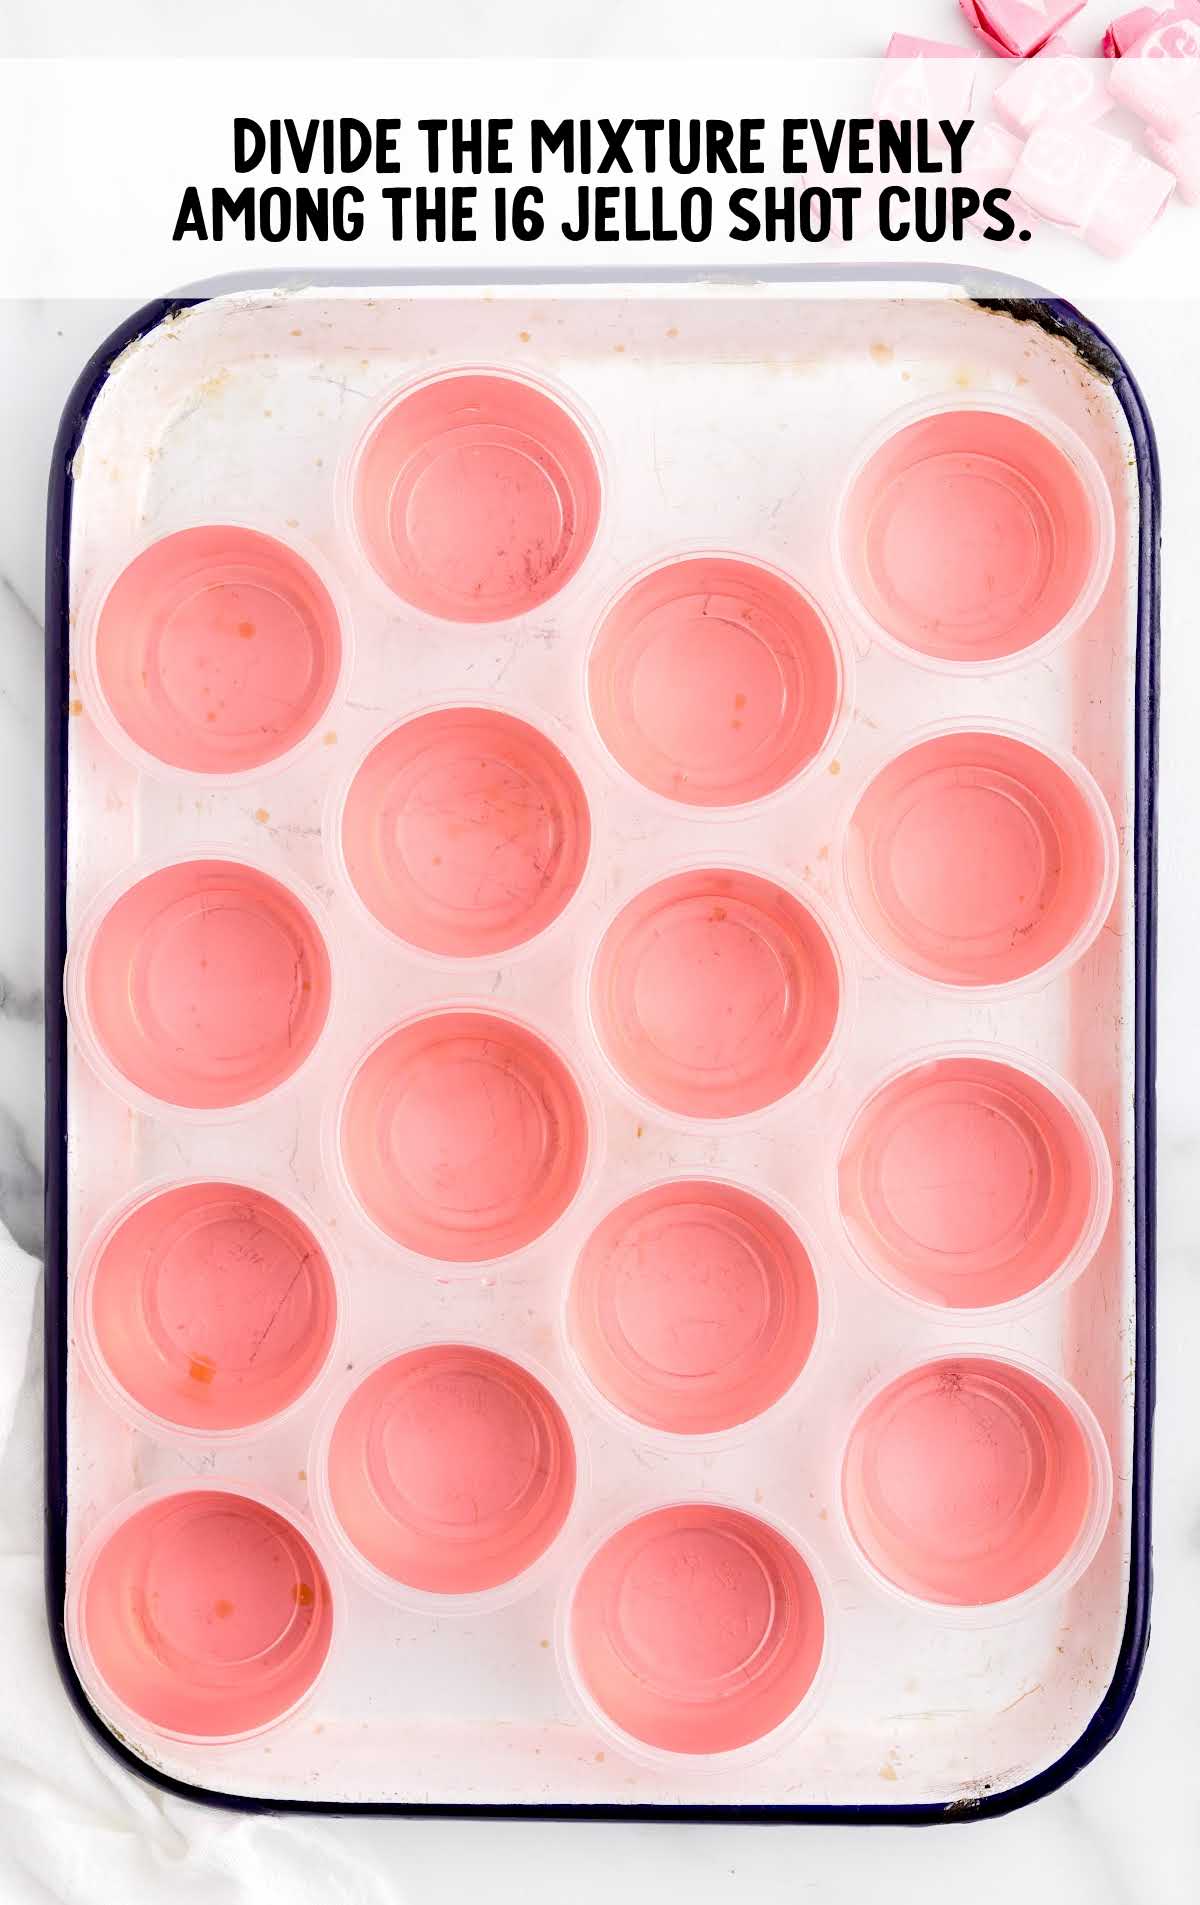 jello shot cups in a baking dish